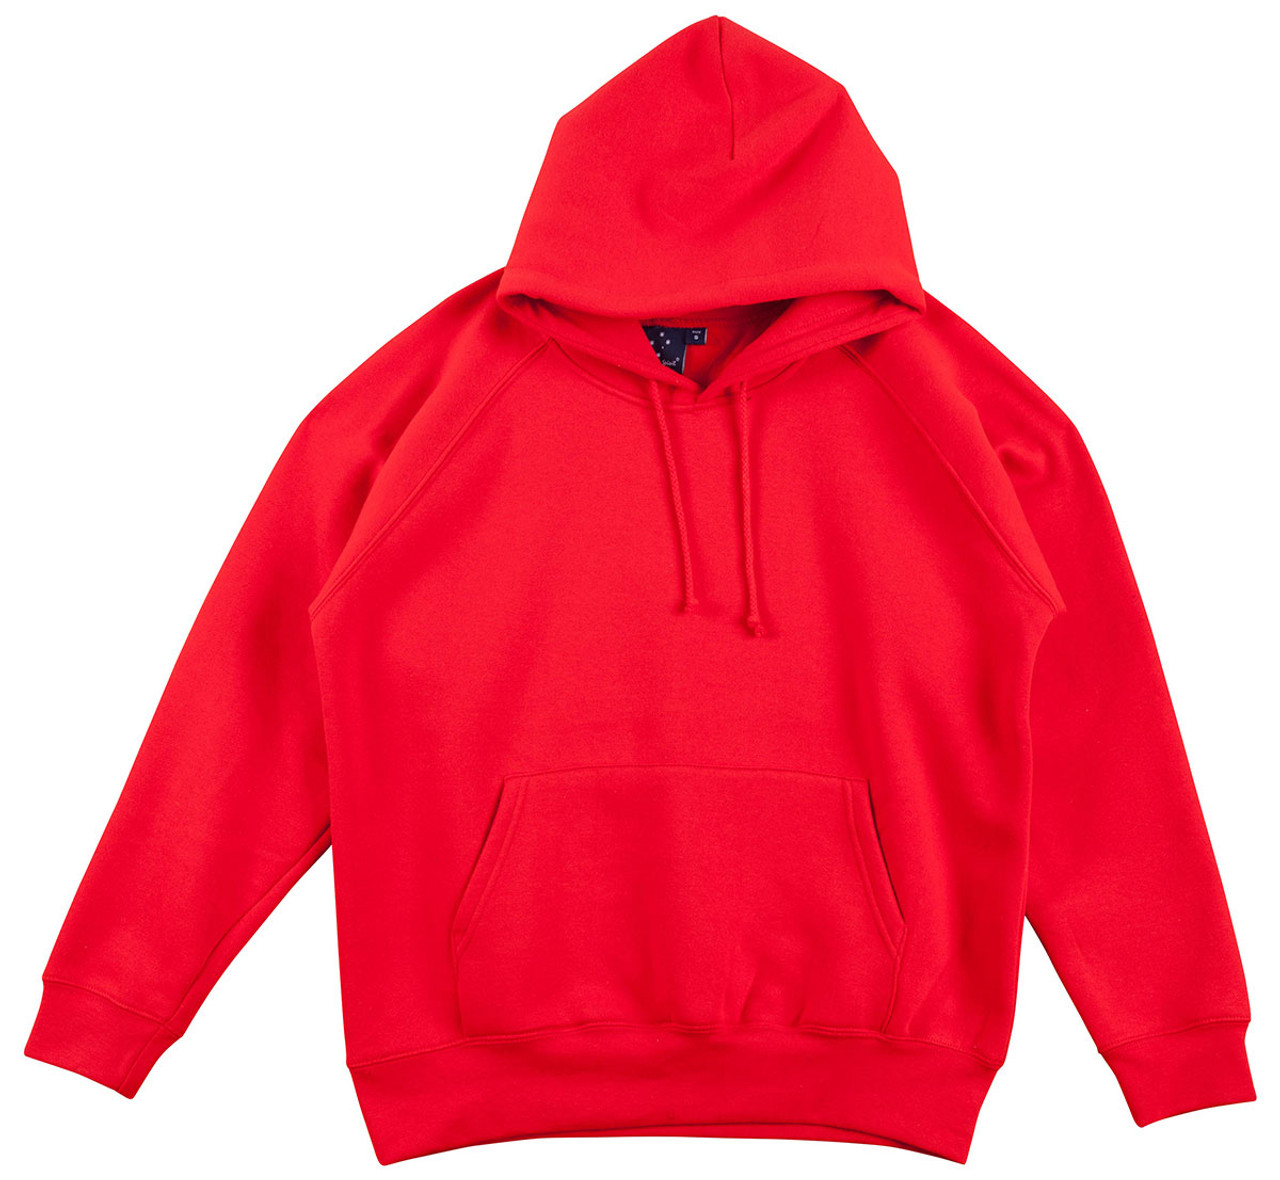 HOODIES | plain cotton-rich hoodies men | blank hoody & clothing wholesale